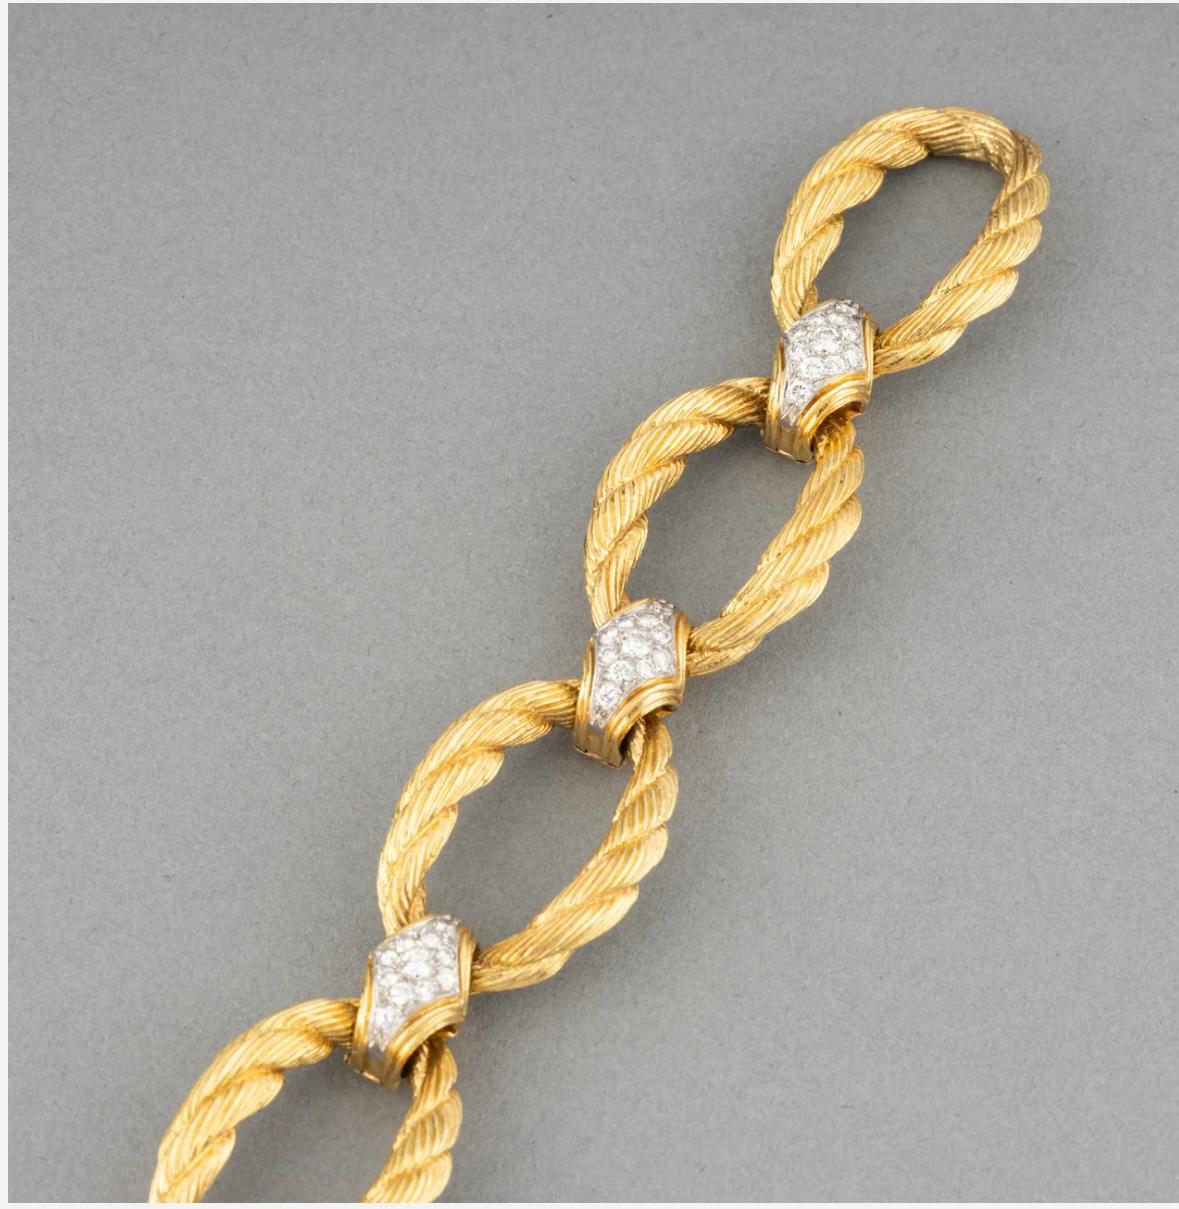 Dieses fantastische französische Gliederarmband aus 18 Karat Gelbgold und Diamanten ist ein unverzichtbarer Bestandteil Ihrer Schmucksammlung. 7,25 Zoll lang, mit 2,0 Karat Diamanten im Brillantschliff zwischen jedem Glied. Das Armband ist auffällig